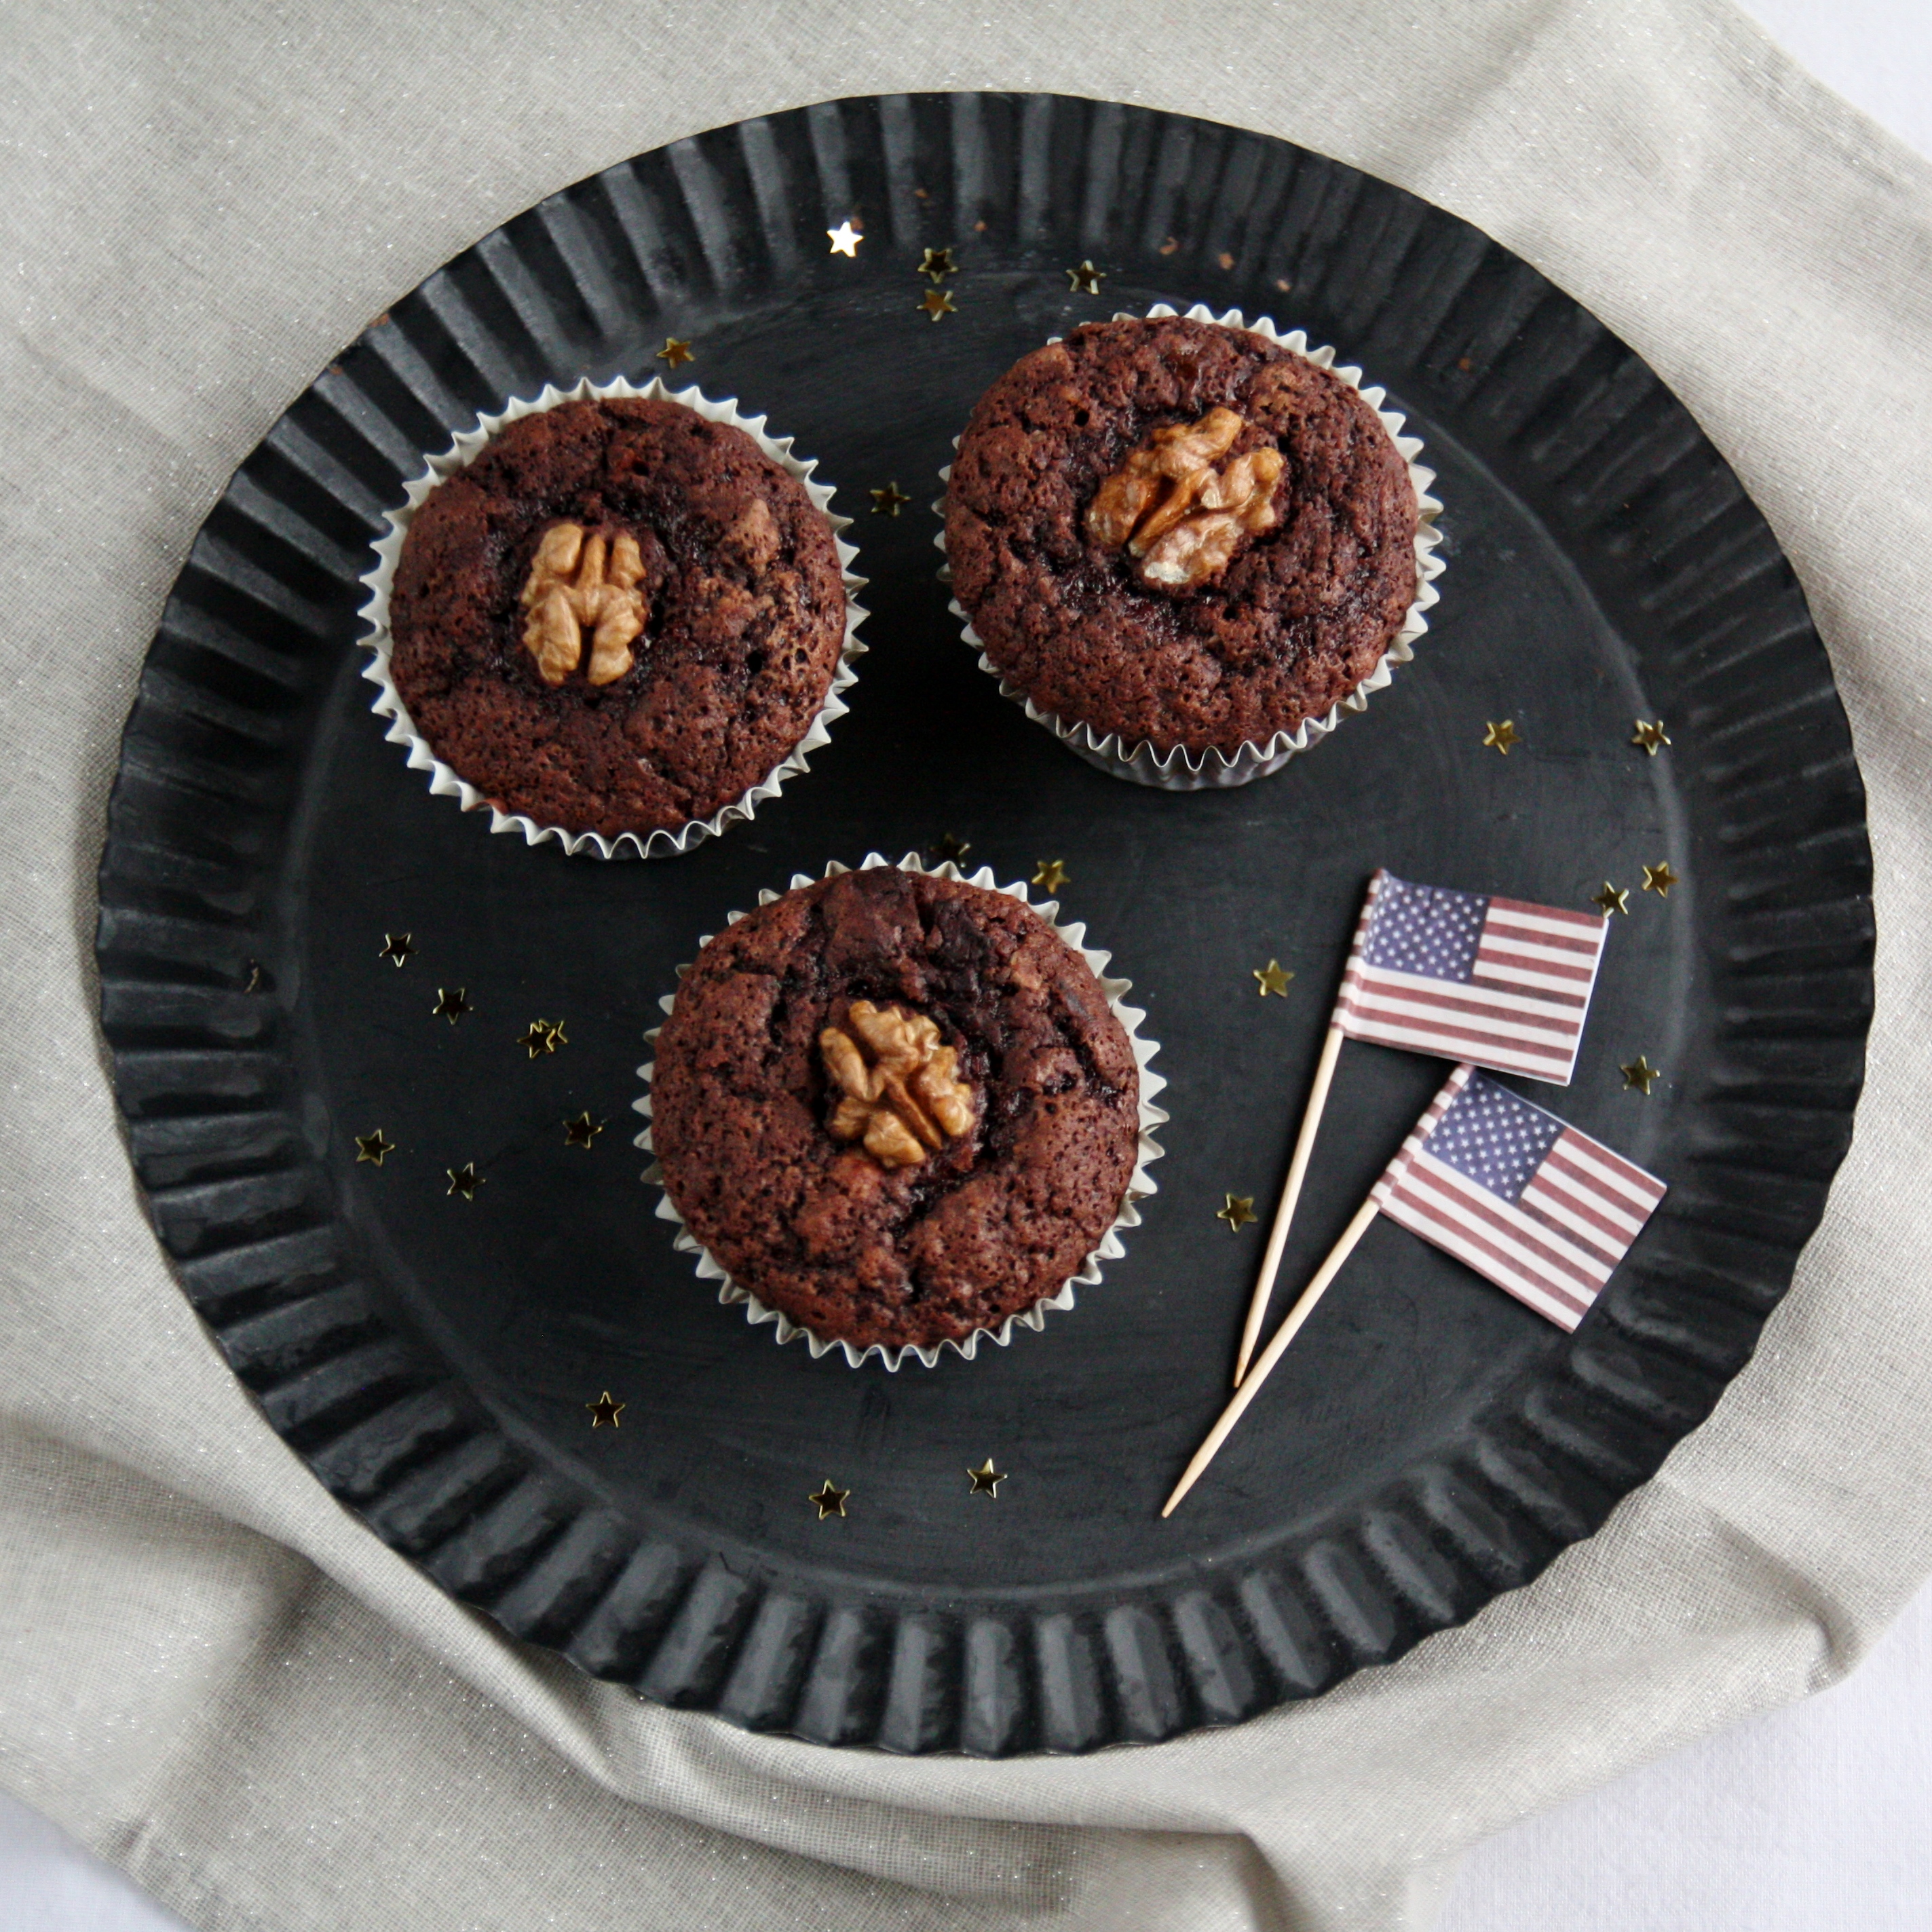 Muffin al triplo cioccolato